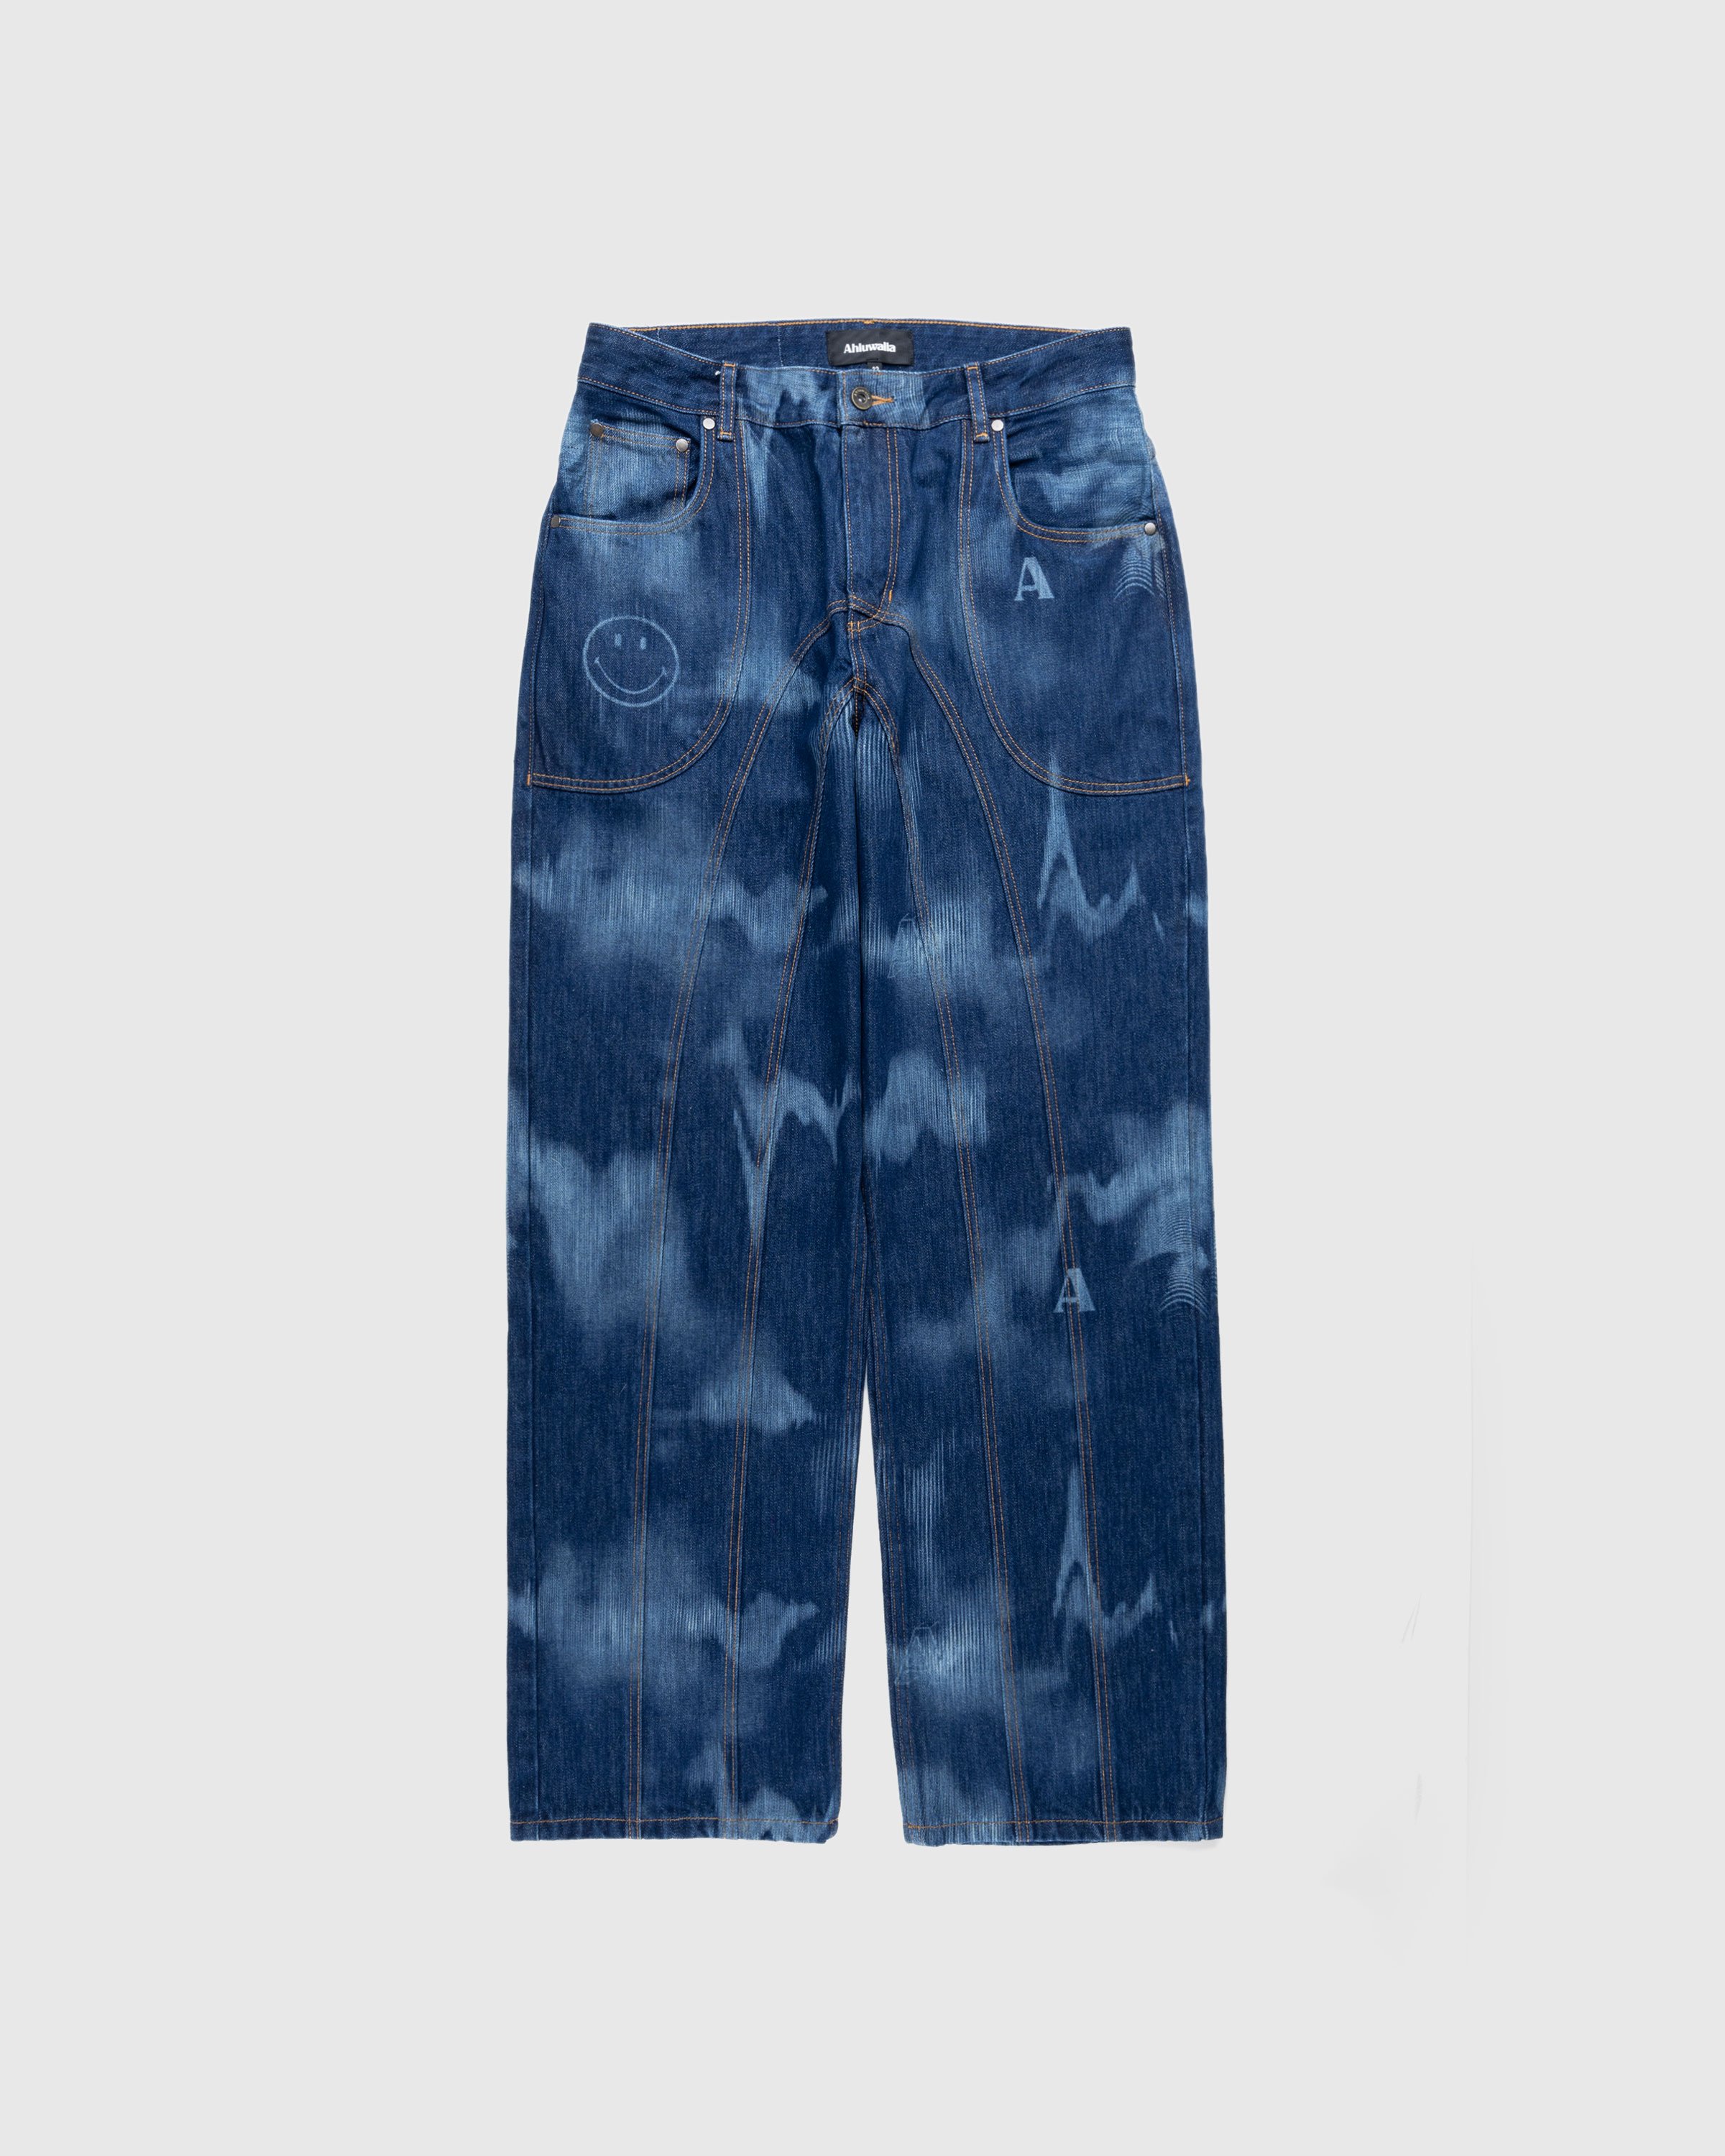 Ahluwalia - Signature Low Rise Jeans Indigo - Clothing - Blue - Image 1